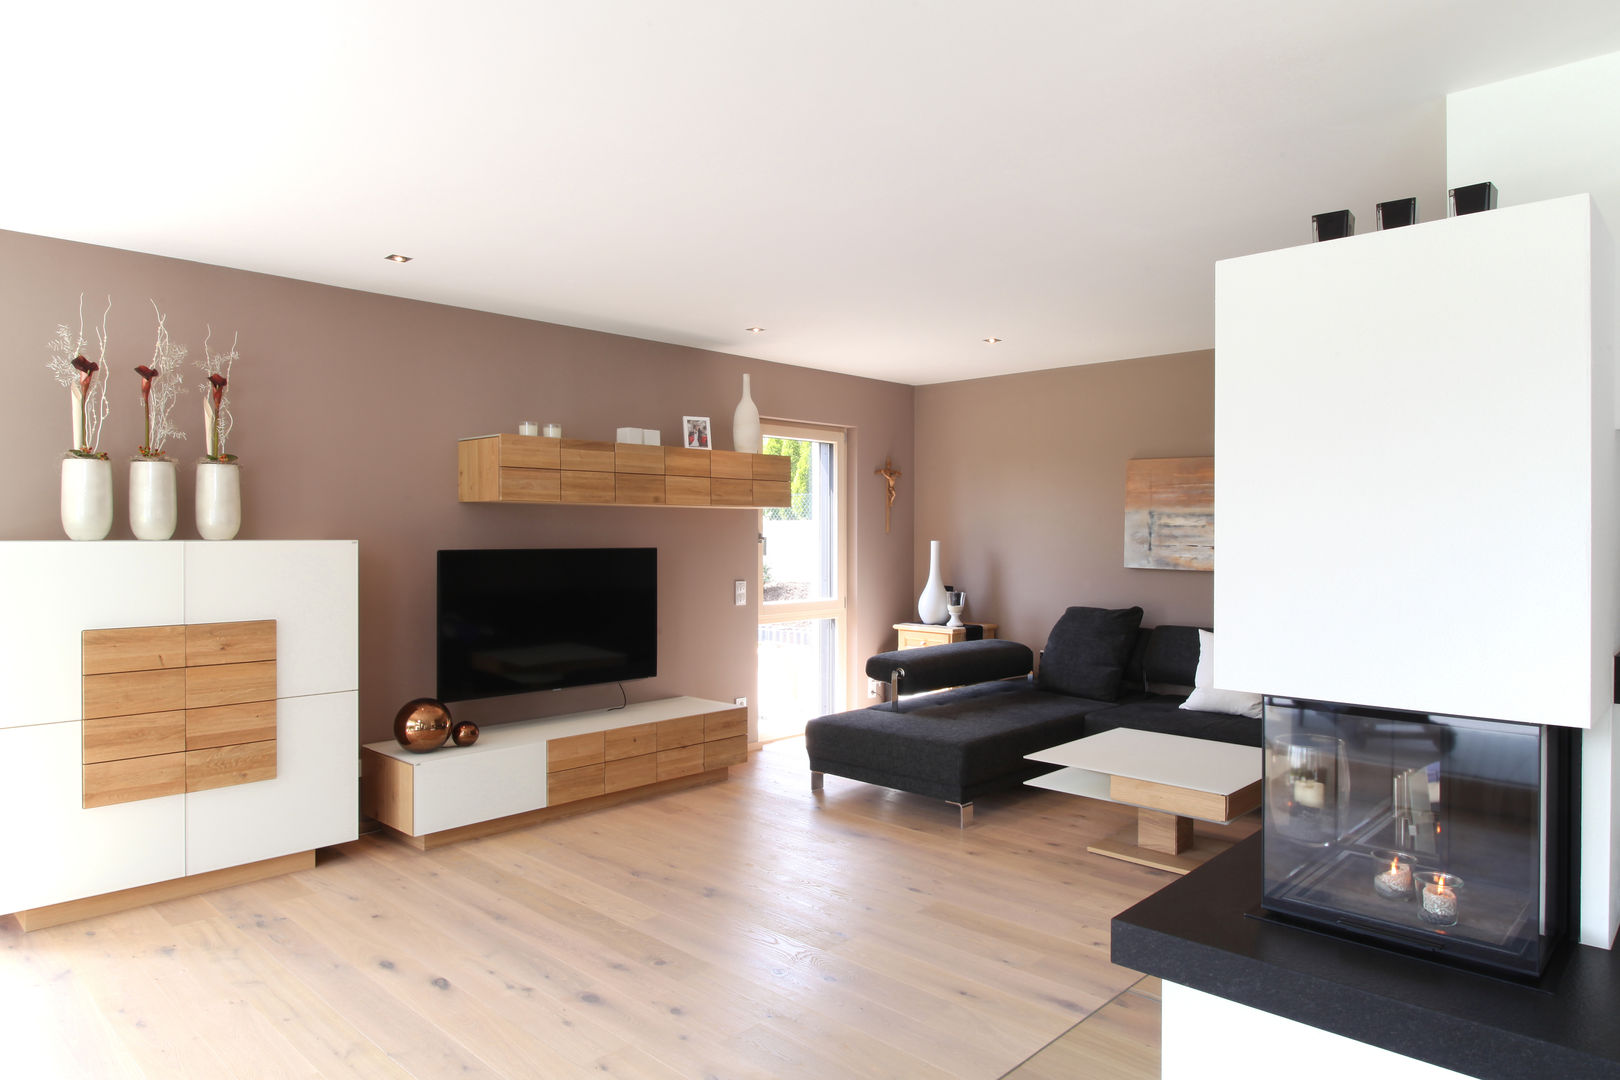 Luxusvilla mit vielen Raffinessen, Bau-Fritz GmbH & Co. KG Bau-Fritz GmbH & Co. KG Modern living room